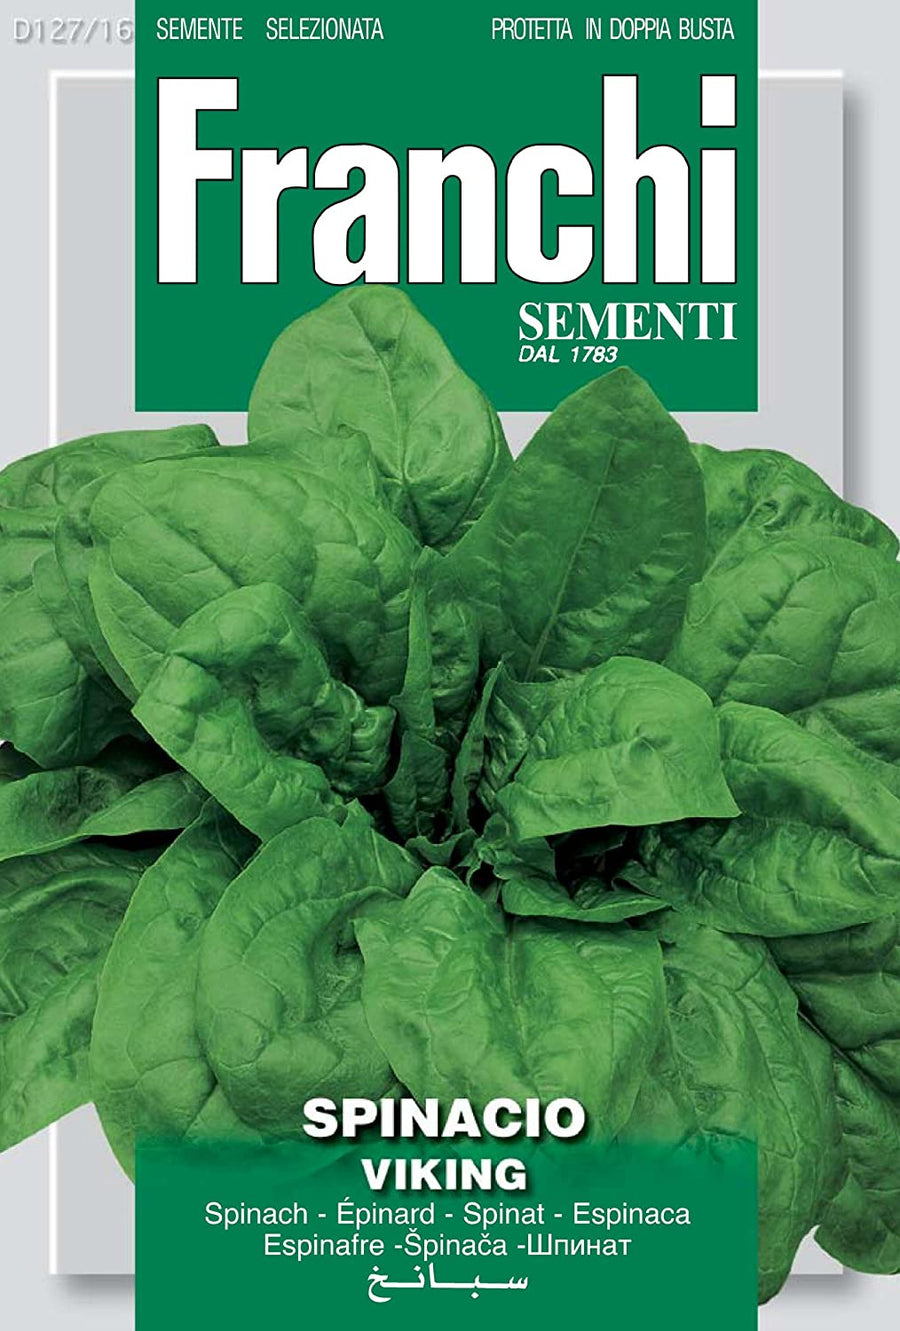 Franchi Spinach 'Viking'